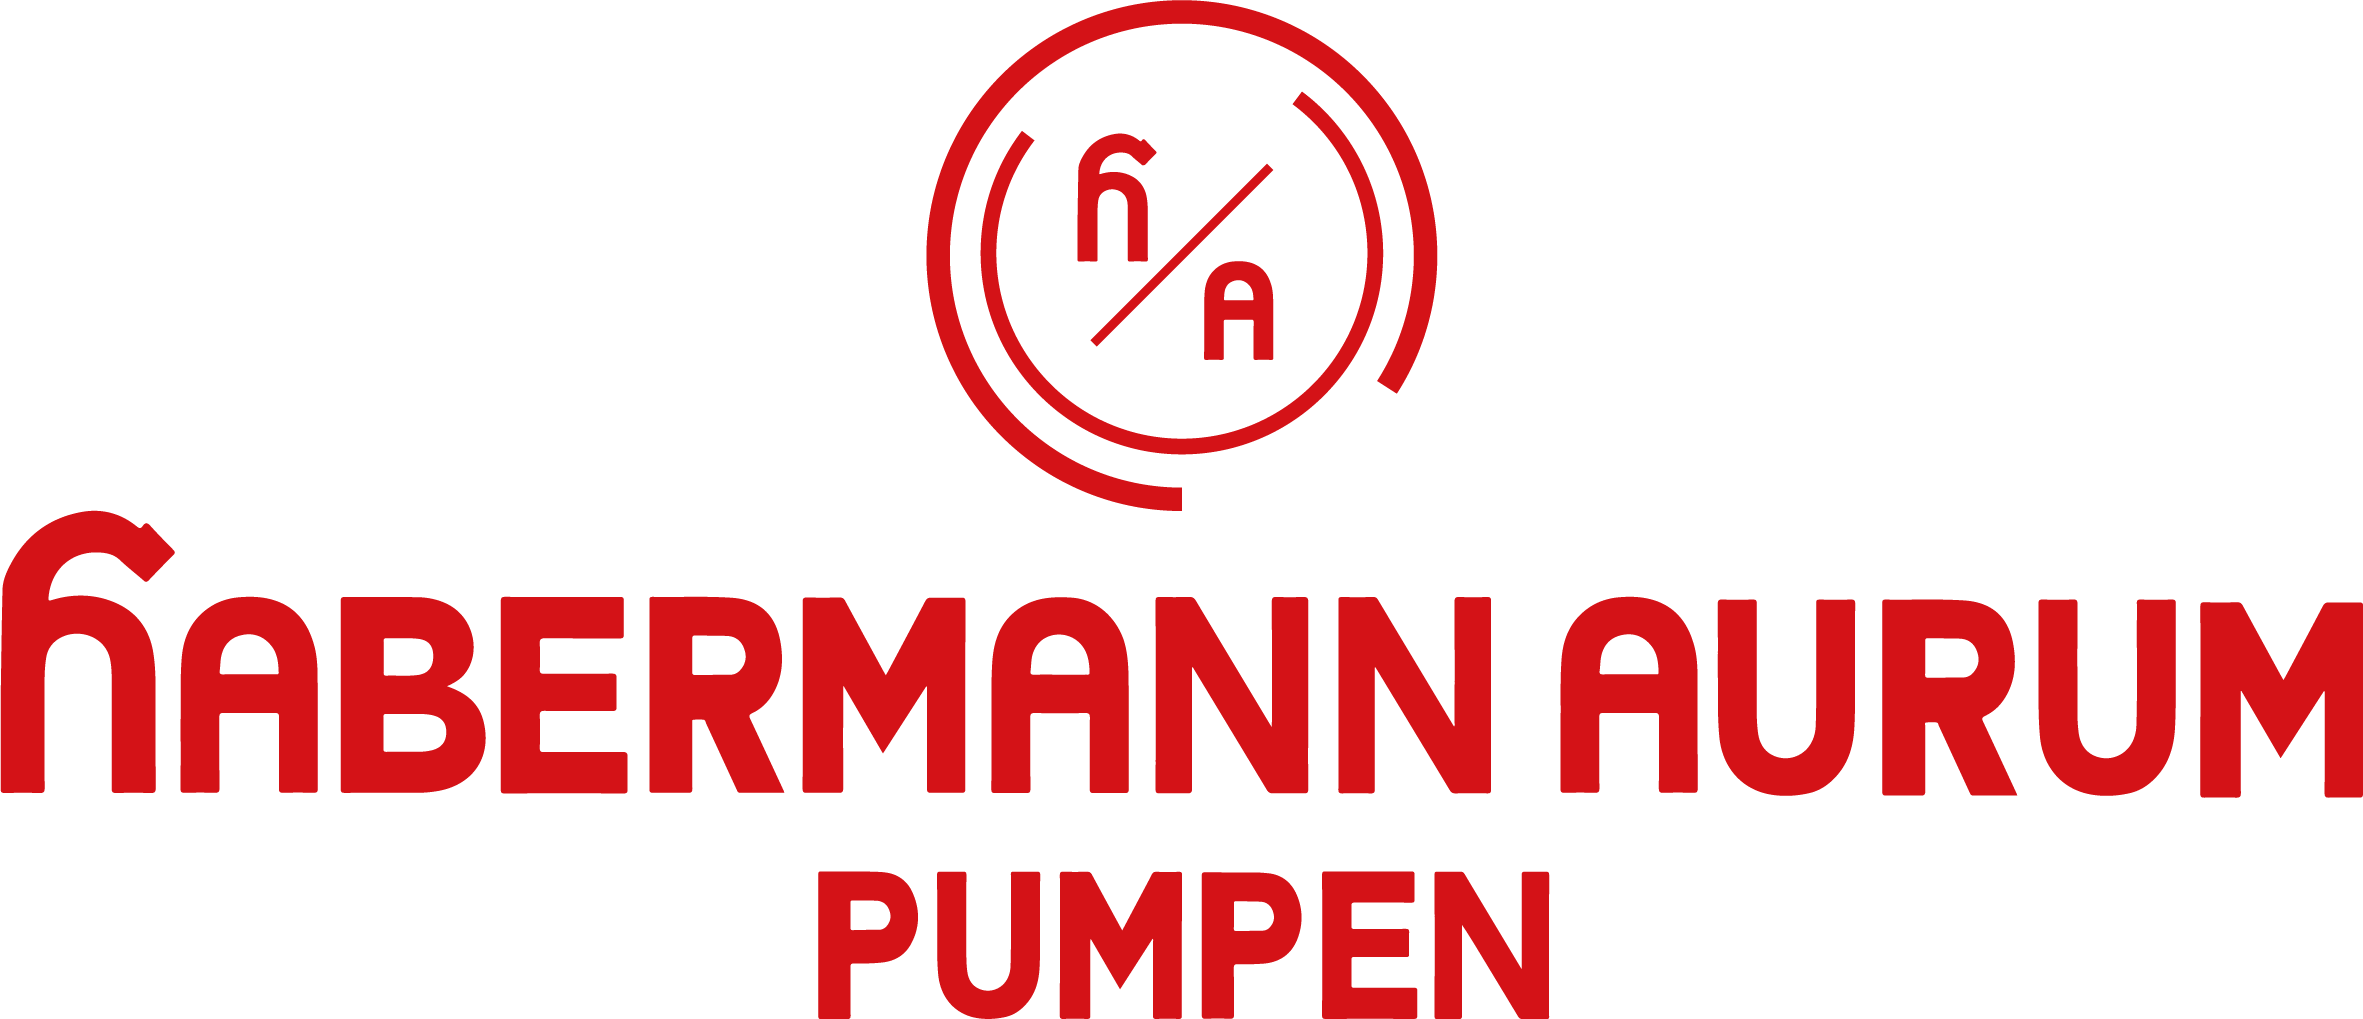 habermann aurum pumpen Logo